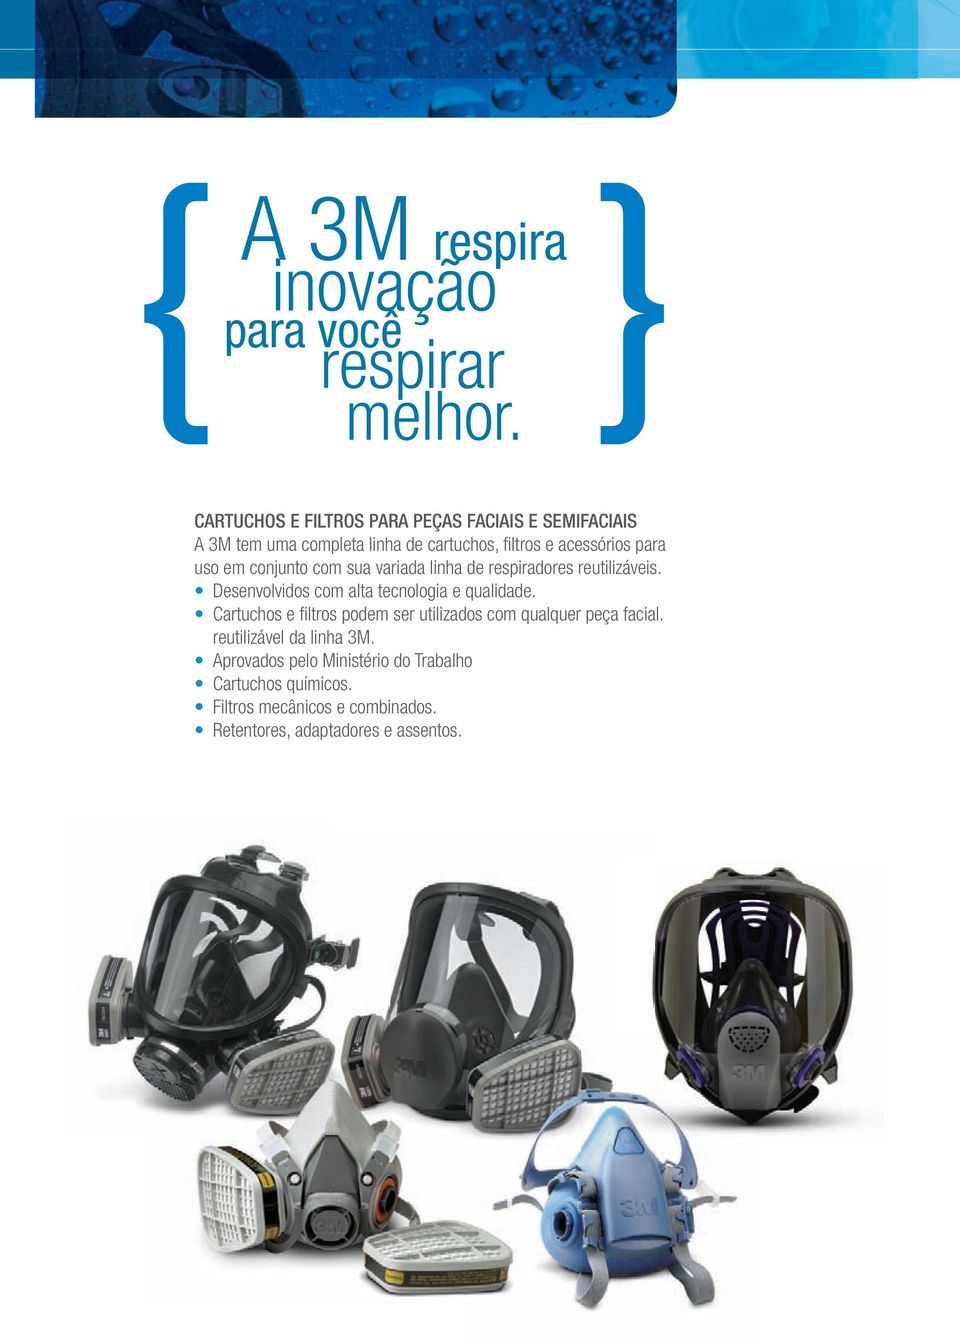 em conjunto com sua variada linha de respiradores reutilizáveis. Desenvolvidos com alta tecnologia e qualidade.